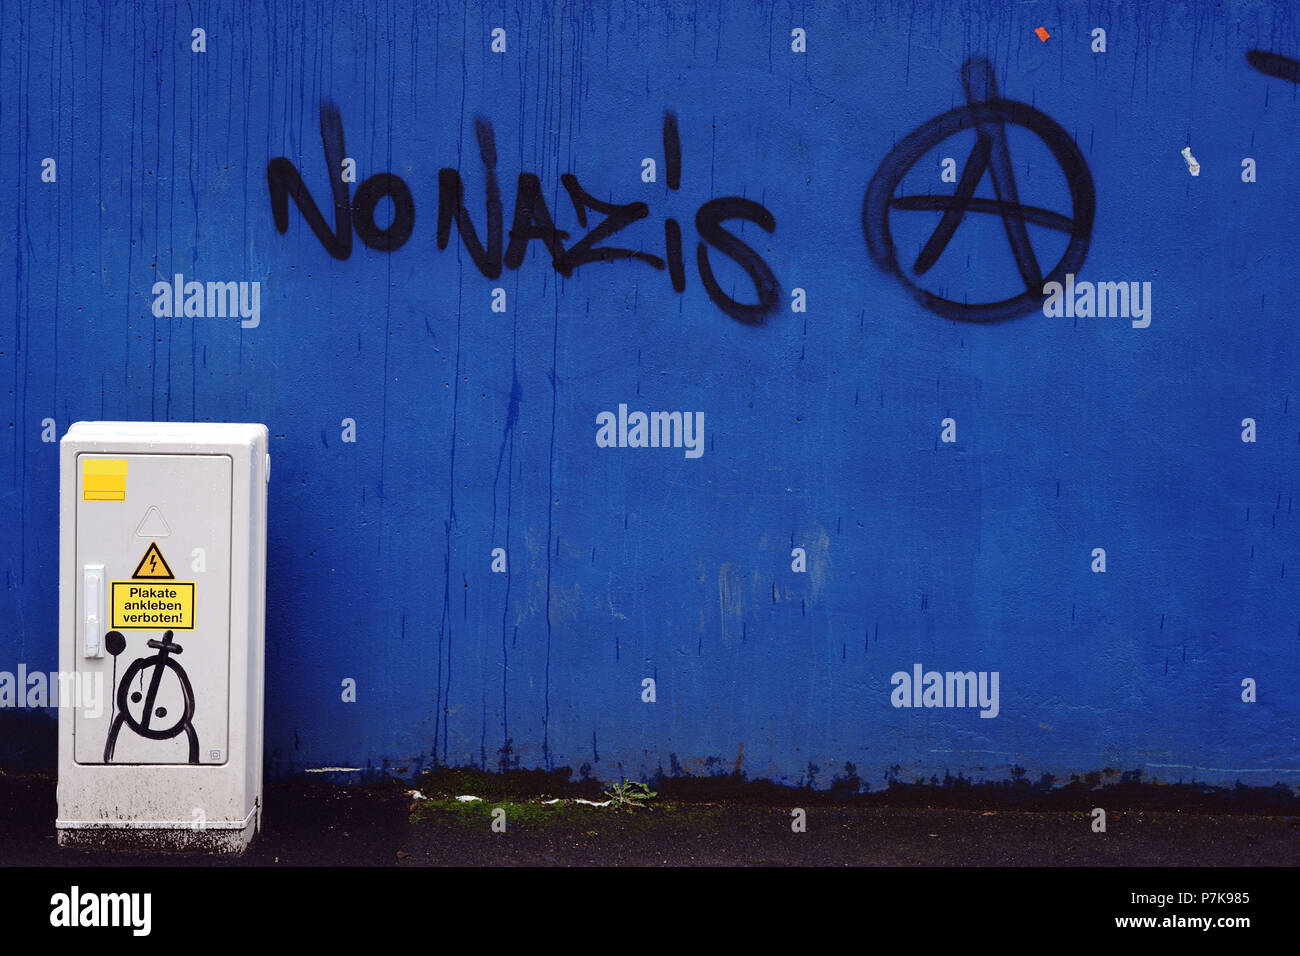 La politica slogan "No nazisti" su una parete blu con una scatola di distribuzione alimentazione, Foto Stock